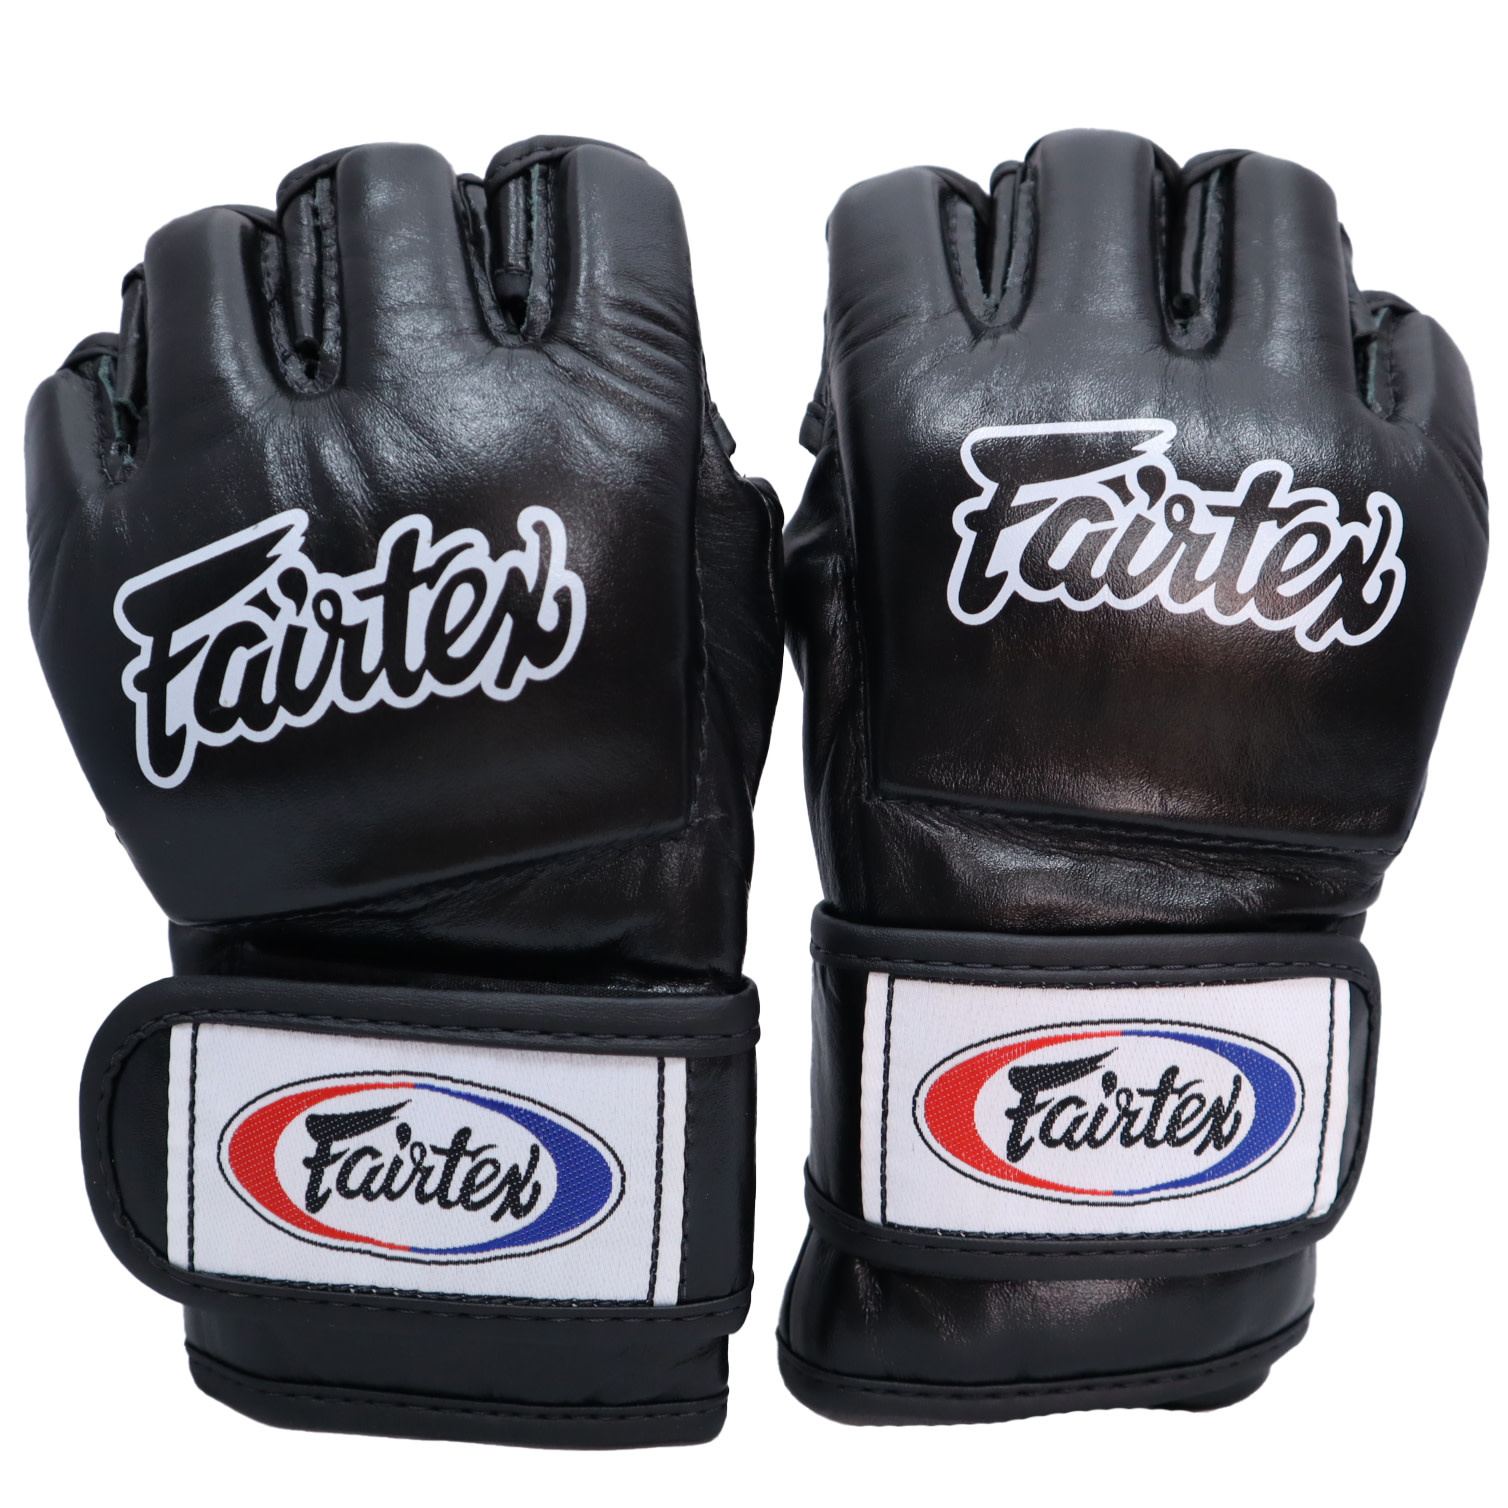 Fairtex Fairtex Ultimate MMA Fight Gloves Martial Arts 4oz Grappling Glove Medium Large 